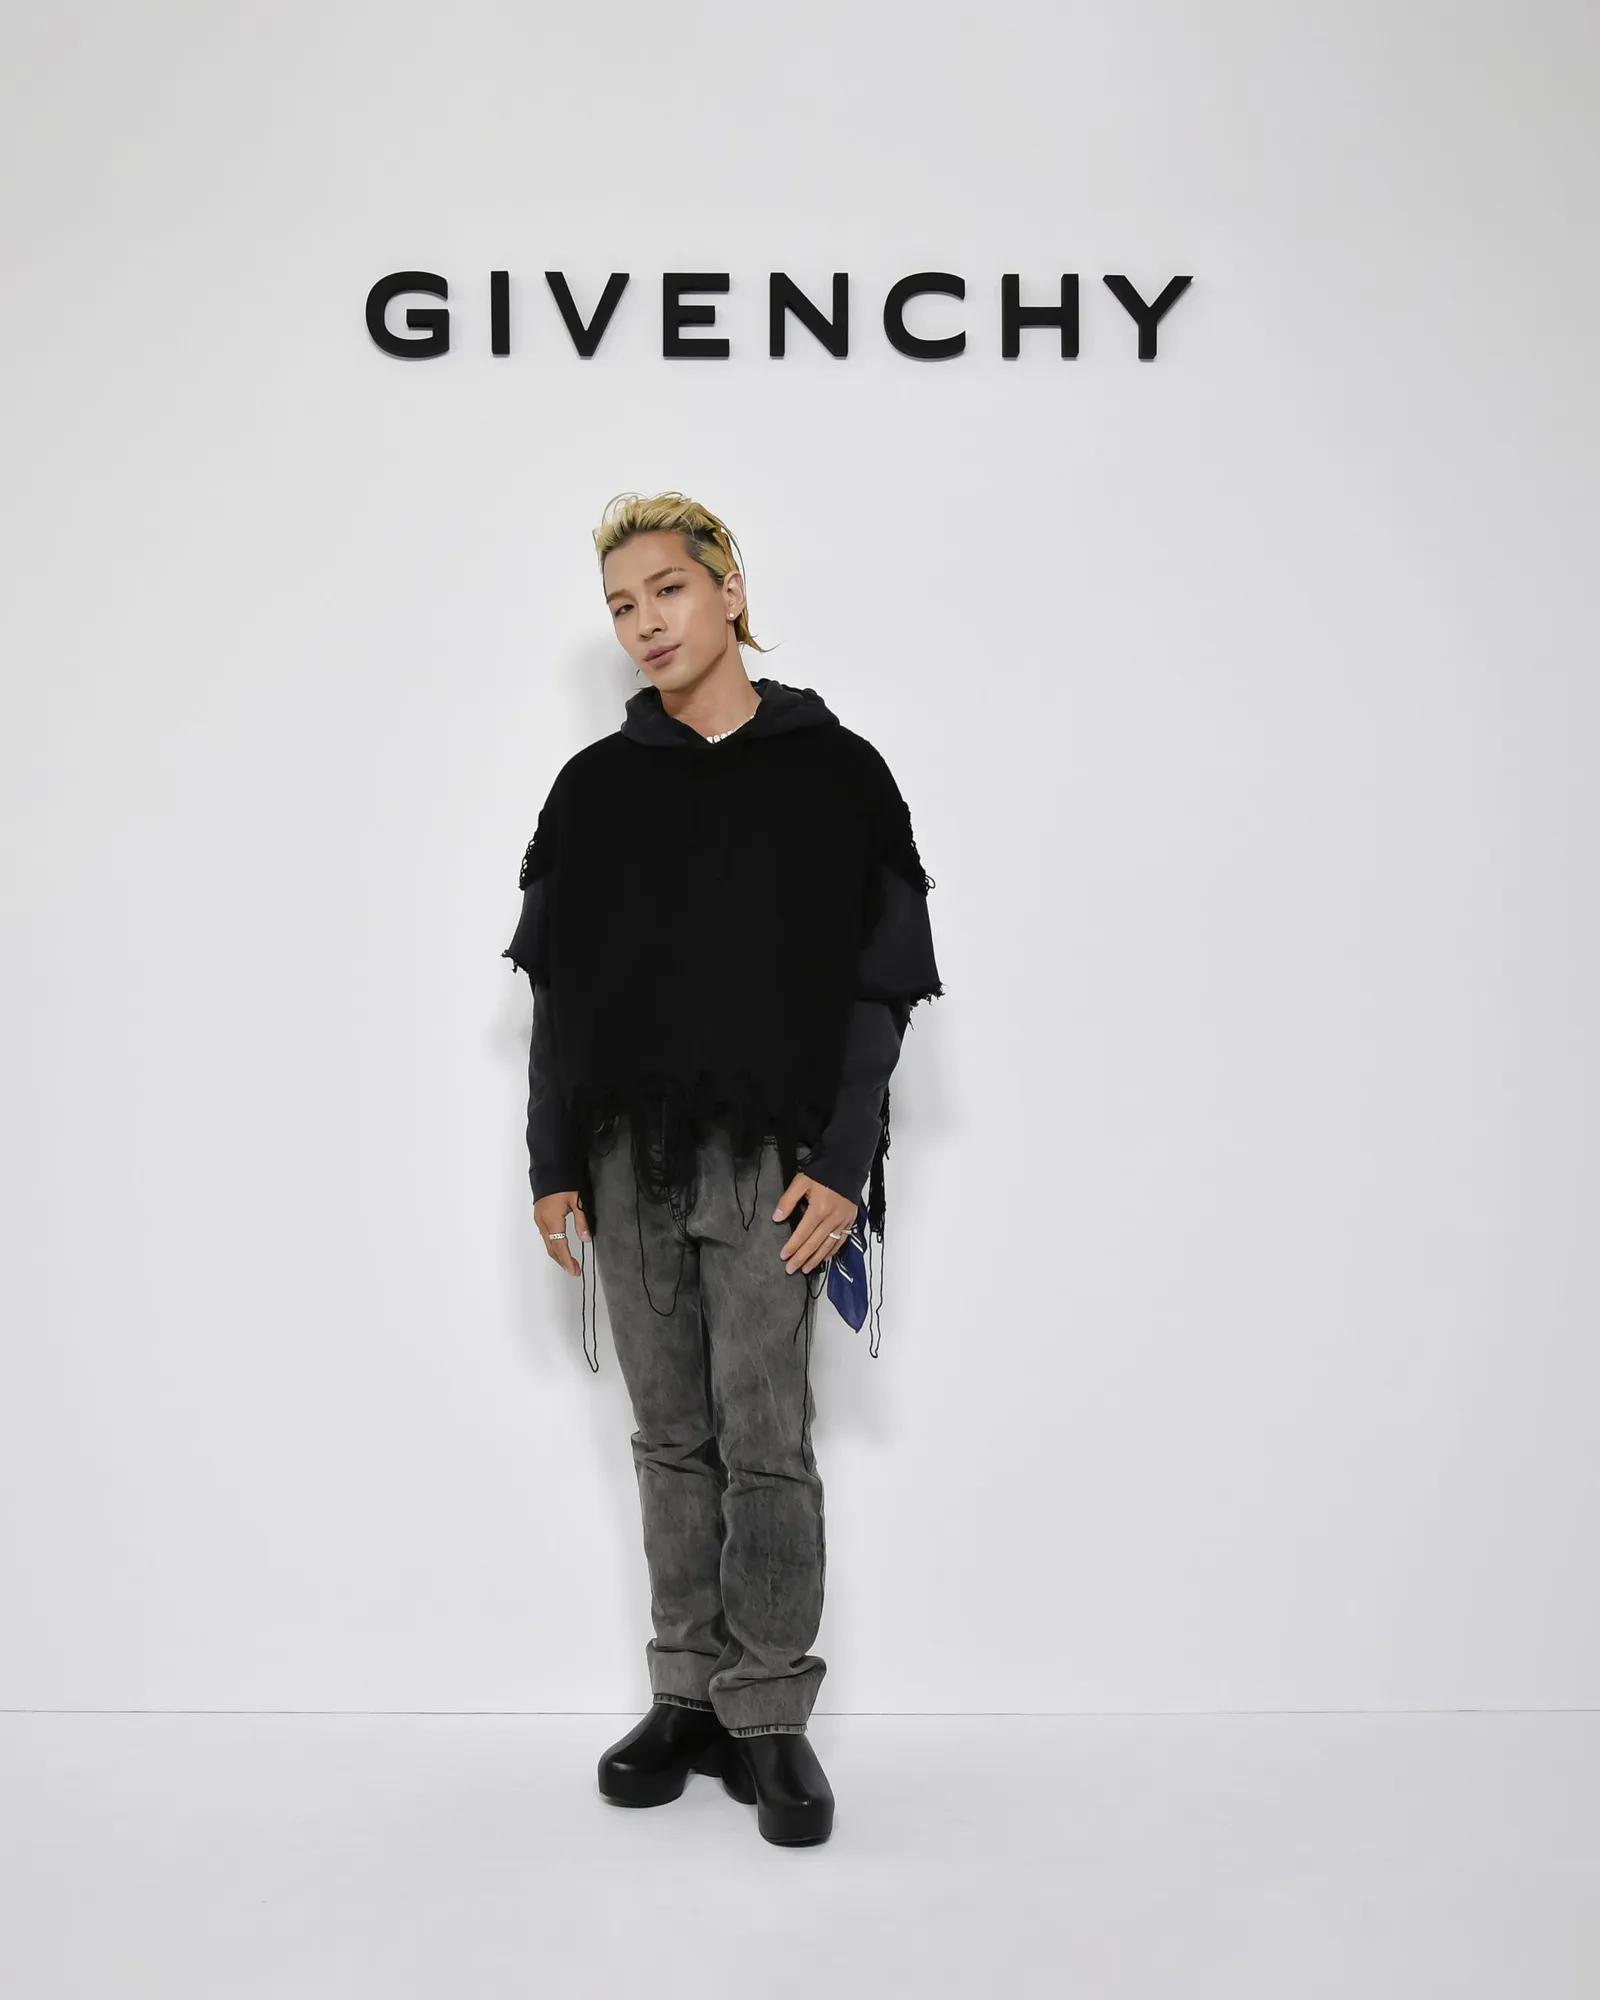 Taeyang Hadiri Fashion Week Sebagai Global Ambassador Givenchy